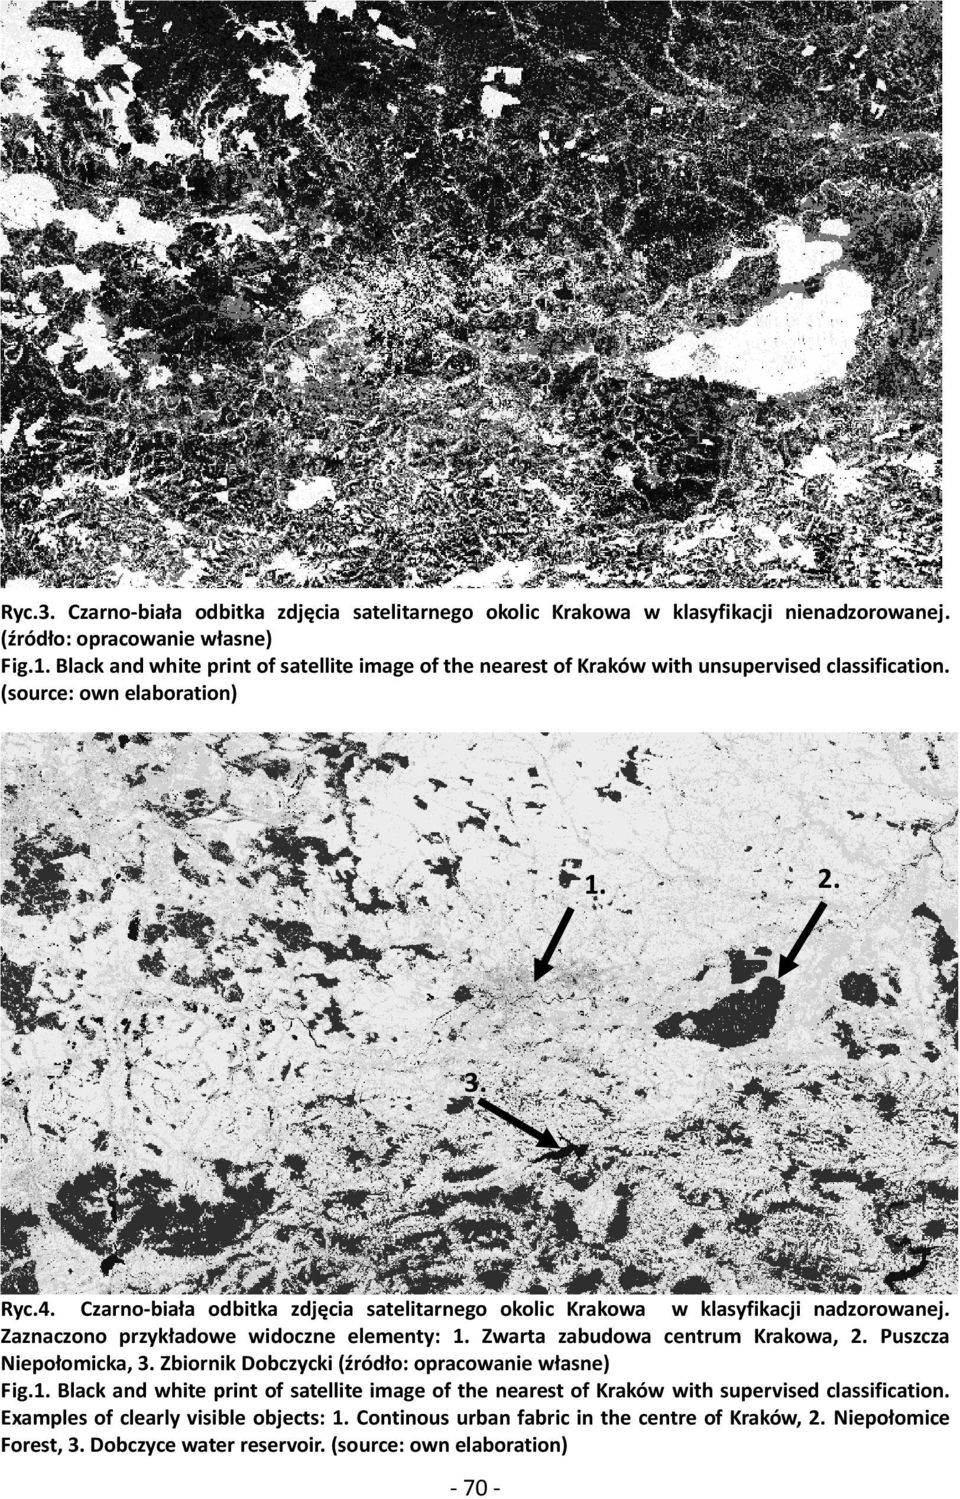 Czarno-biała odbitka zdjęcia satelitarnego okolic Krakowa w klasyfikacji nadzorowanej. Zaznaczono przykładowe widoczne elementy: 1. Zwarta zabudowa centrum Krakowa, 2. Puszcza Niepołomicka, 3.